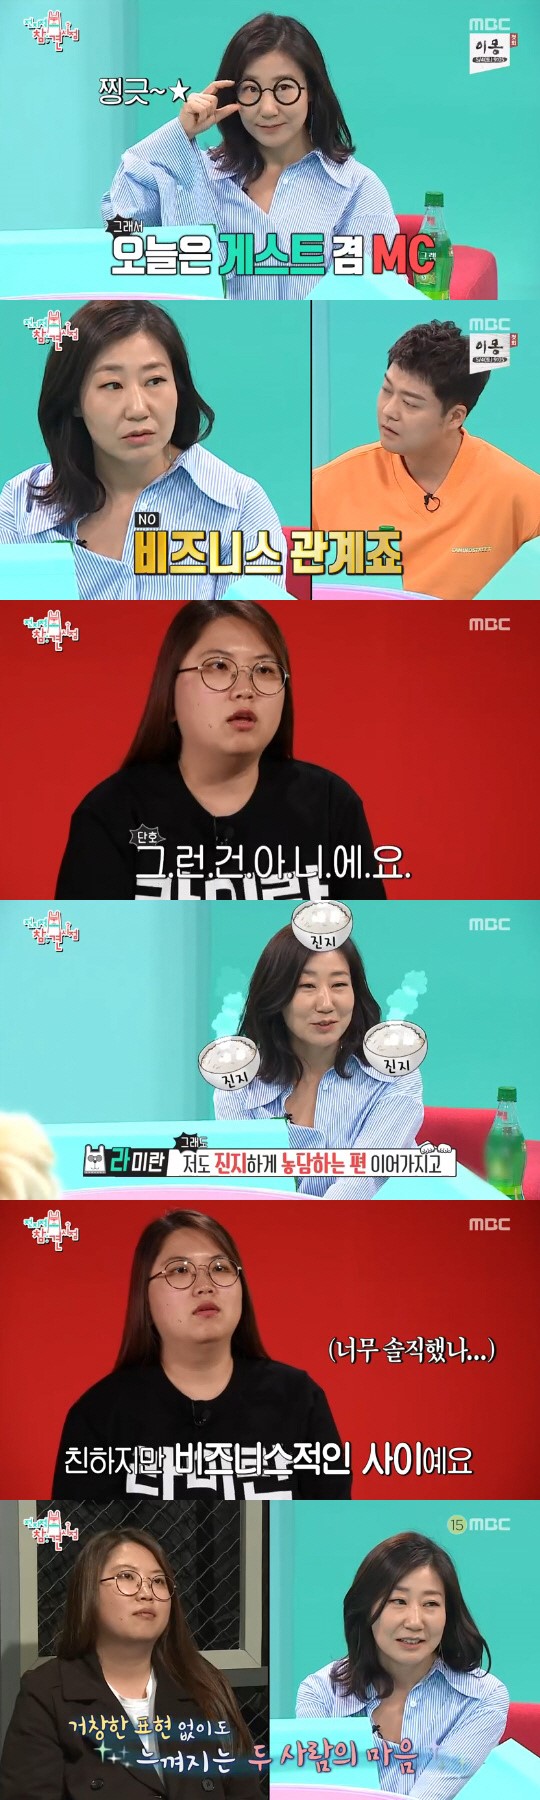 [종합] '전참시' 라미란X매니저, 비즈니스 자매…이승윤 '복면가왕' 도전 大성공 